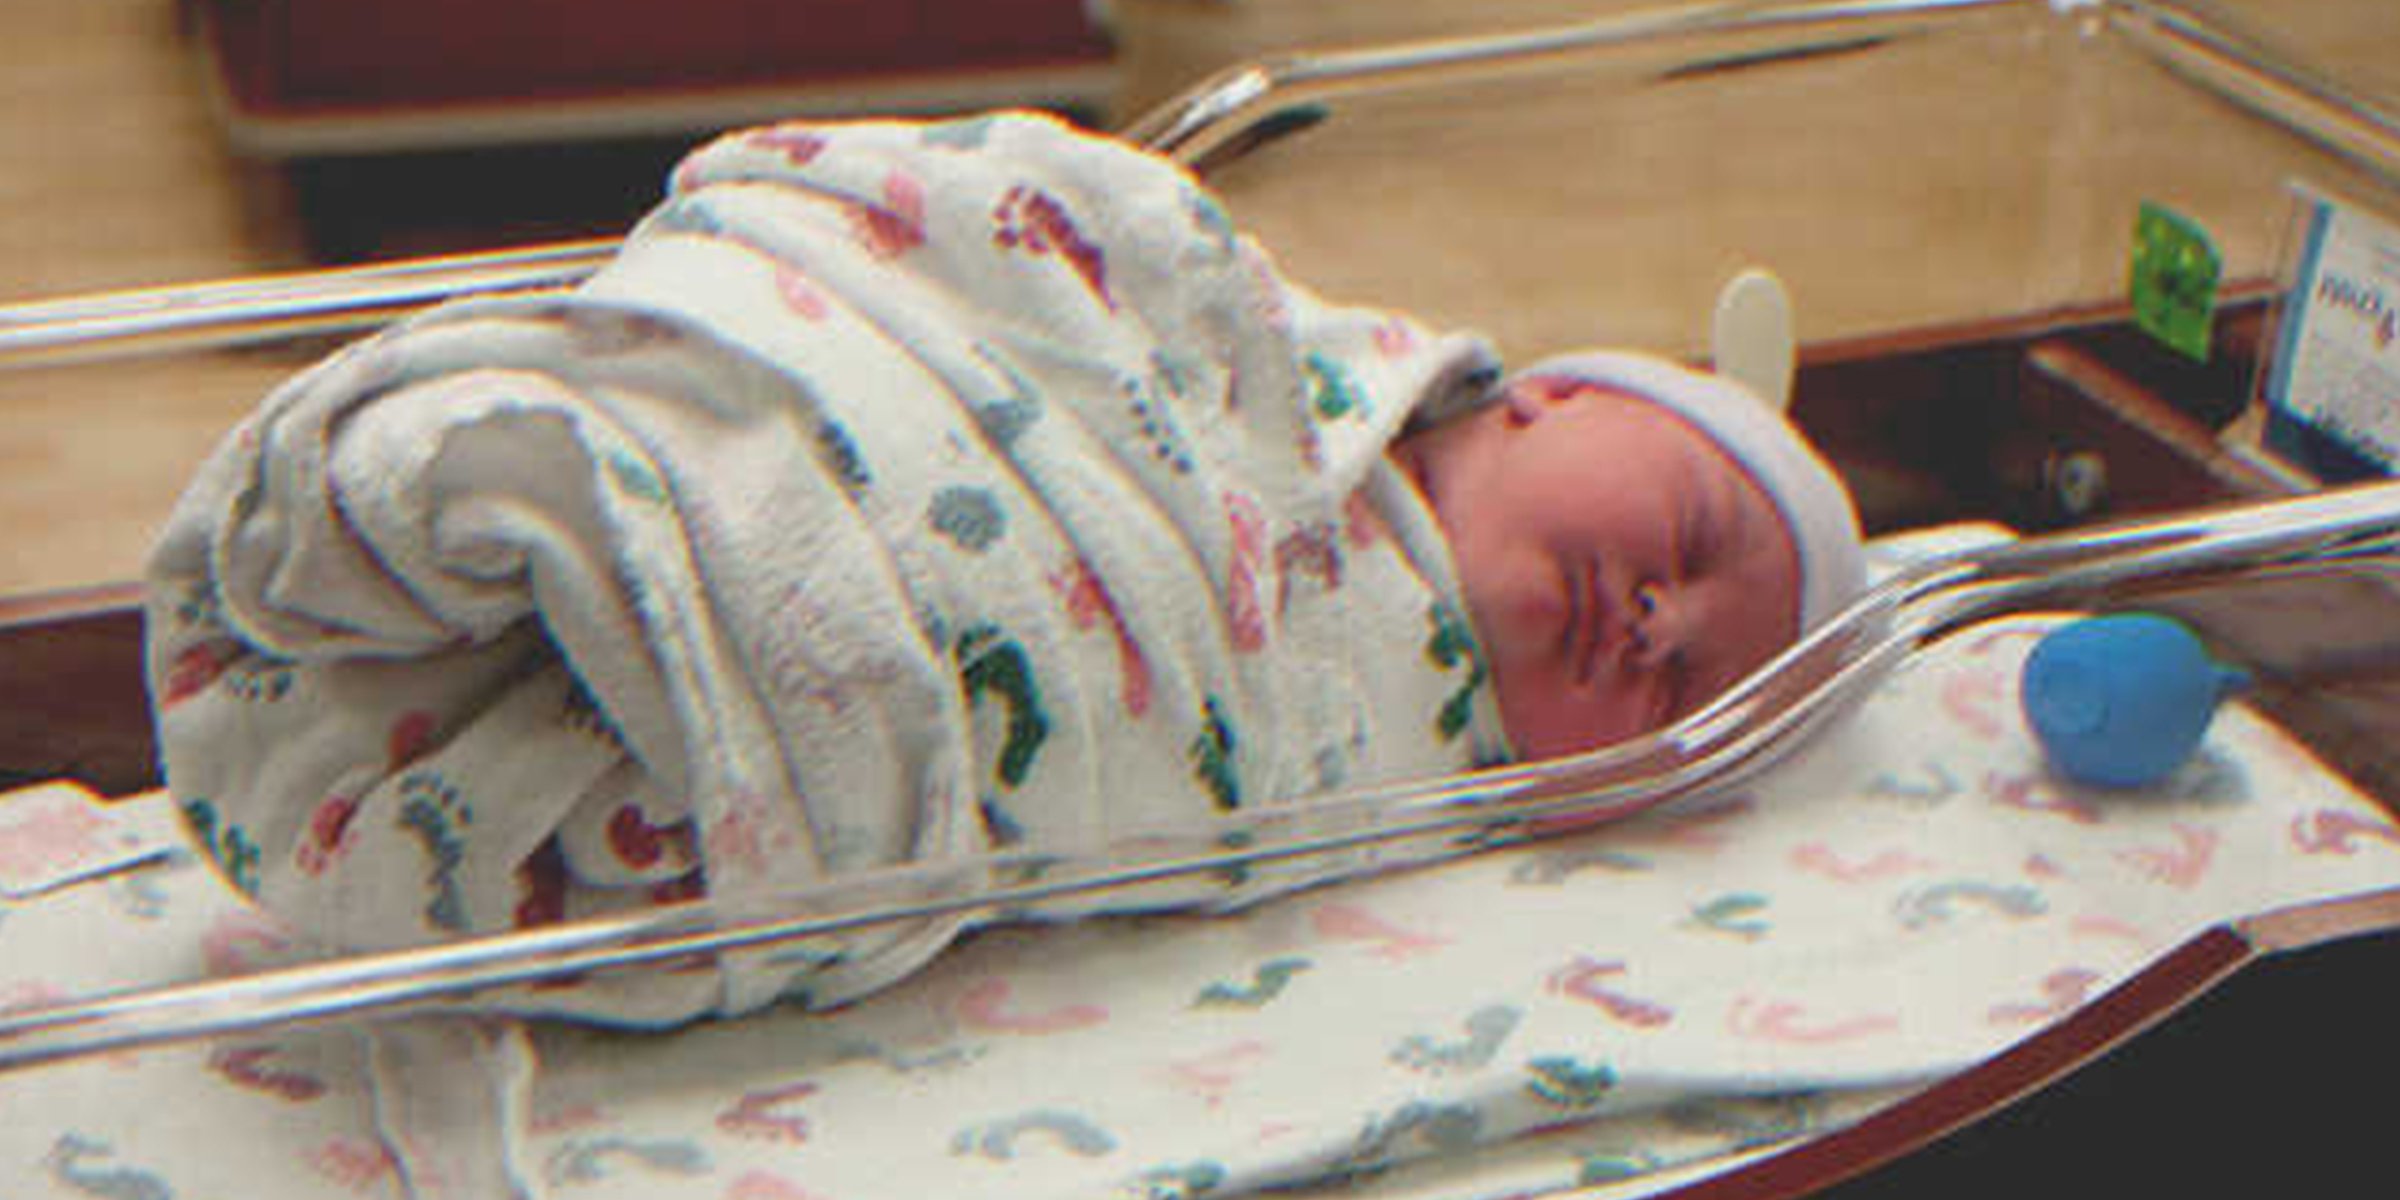 A newborn baby | Source: Flickr/Dave Herholz